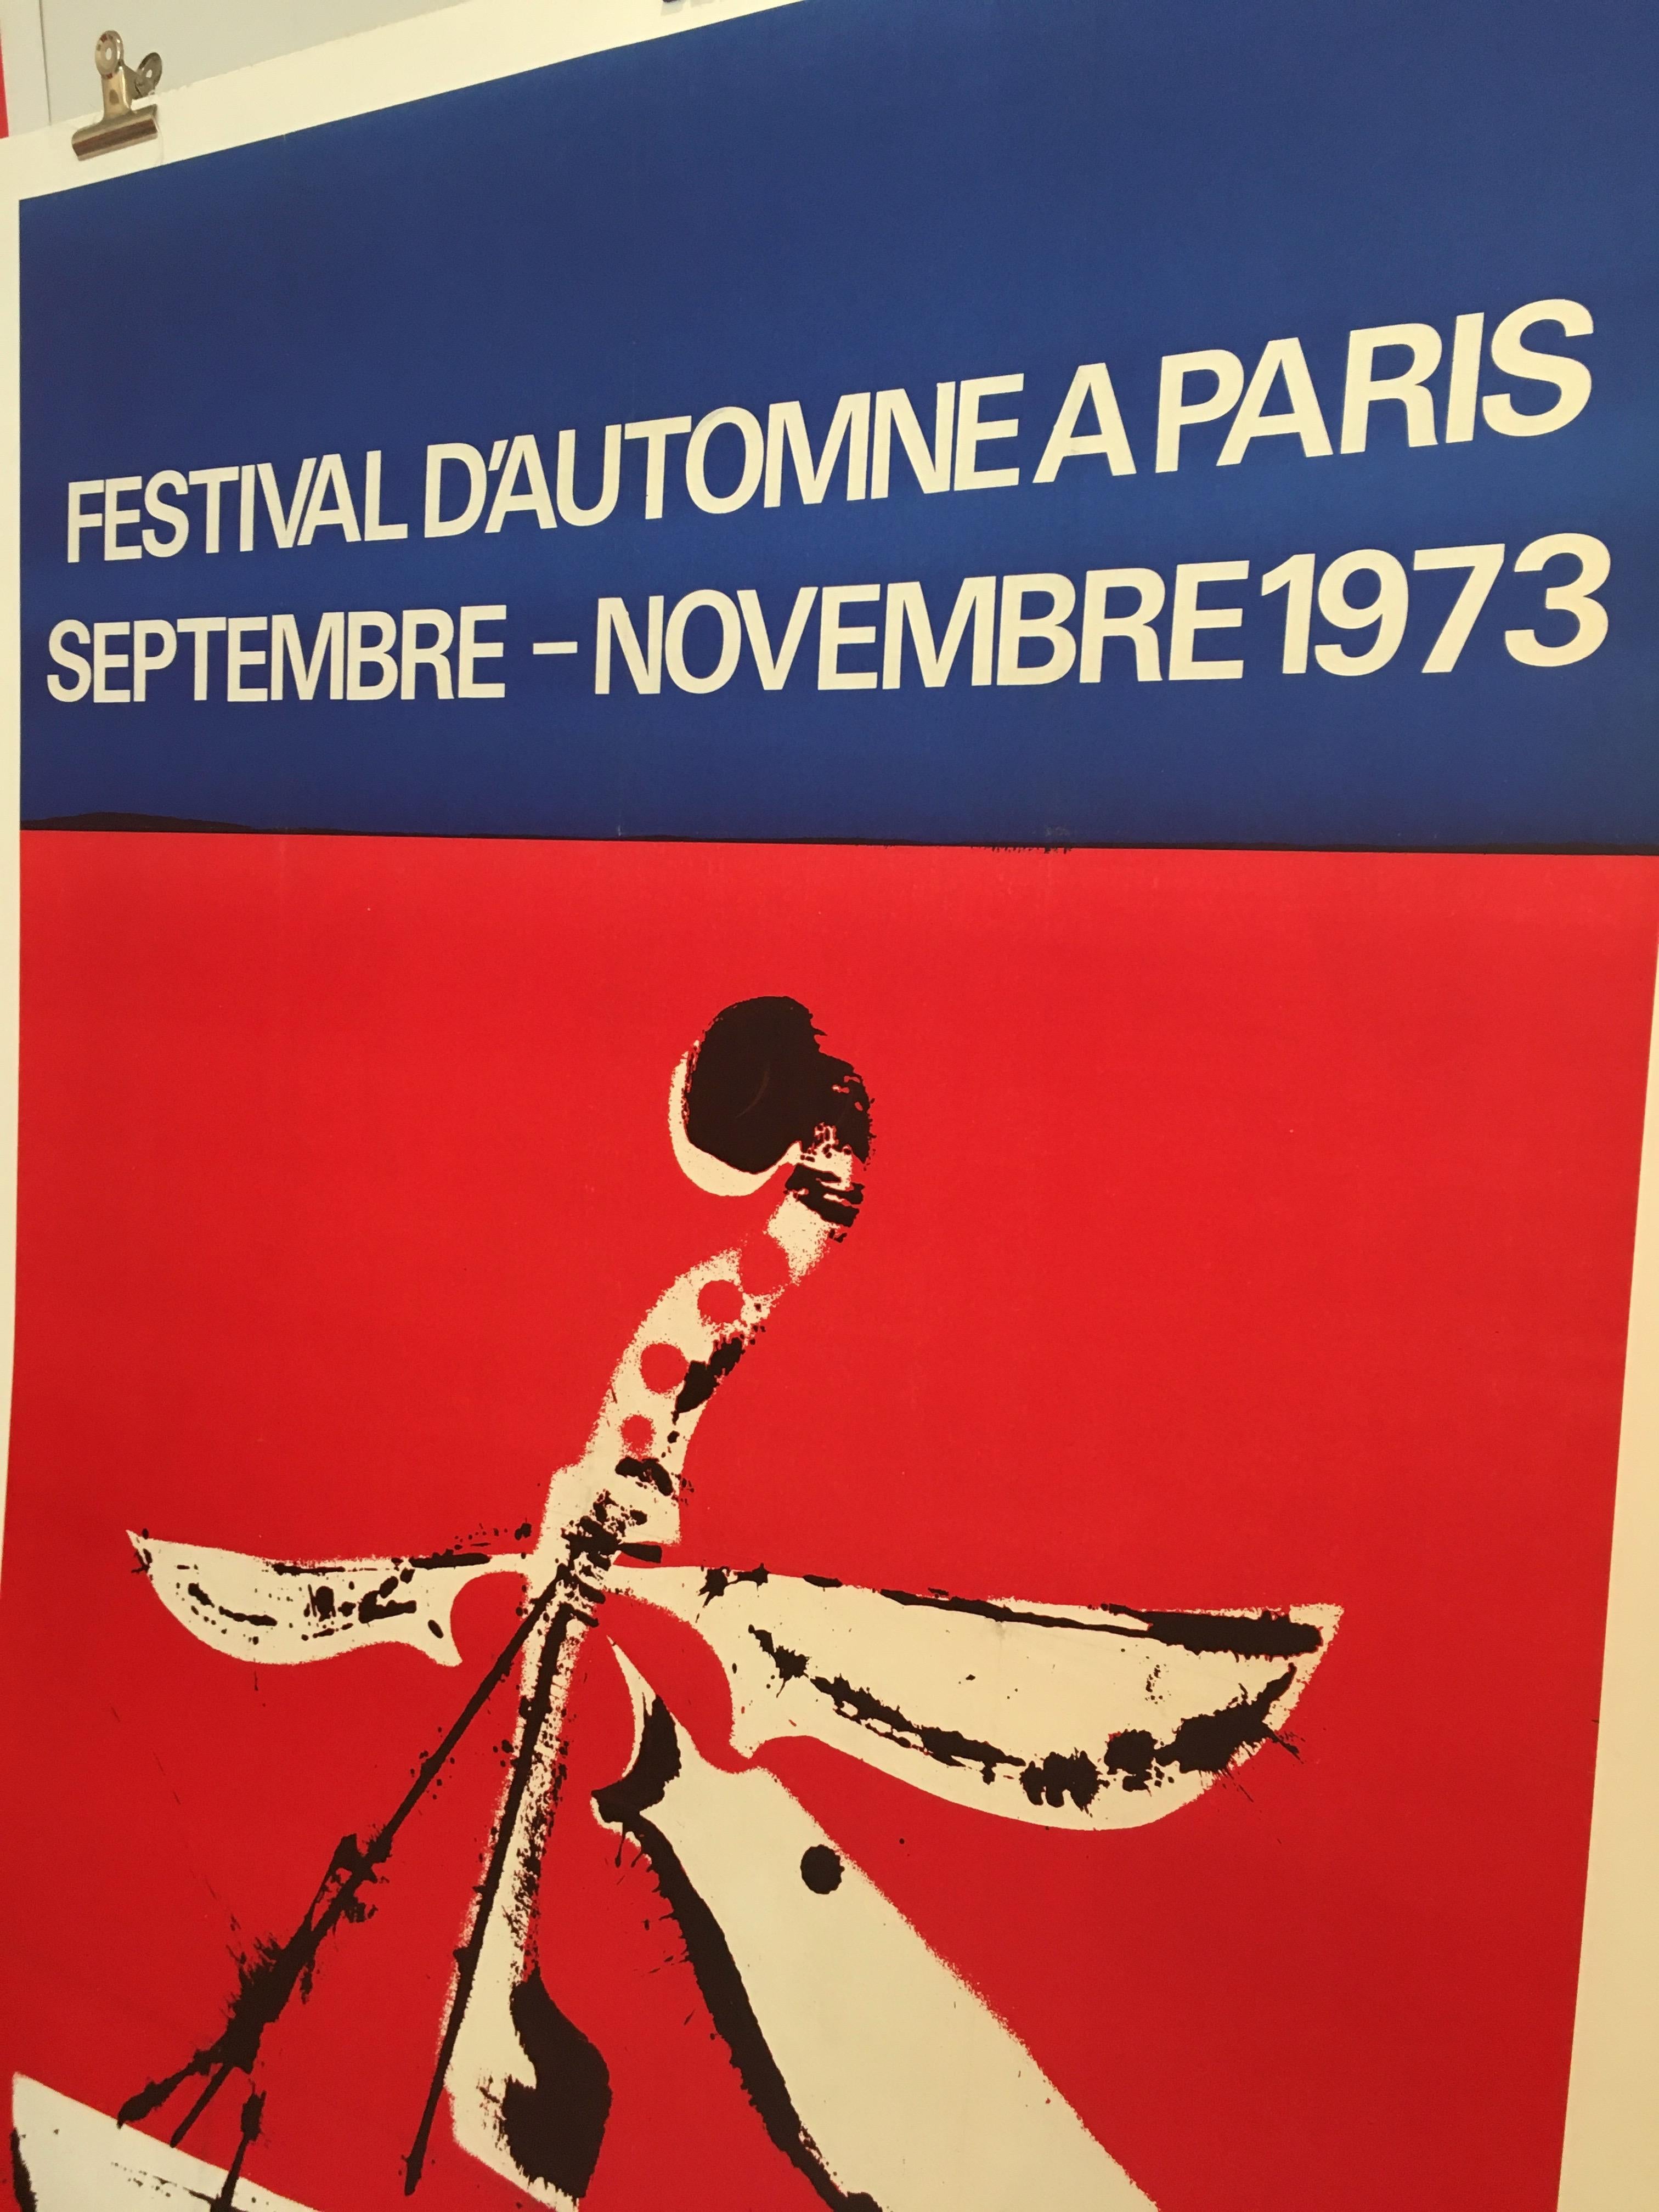 Mitte der 1970er Jahre originales französisches Festivalplakat, 'Festival D'automne', 1973


Künstler: 
Arman

Abmessungen: 
158 x 109 cm

Jahr: 
1973.